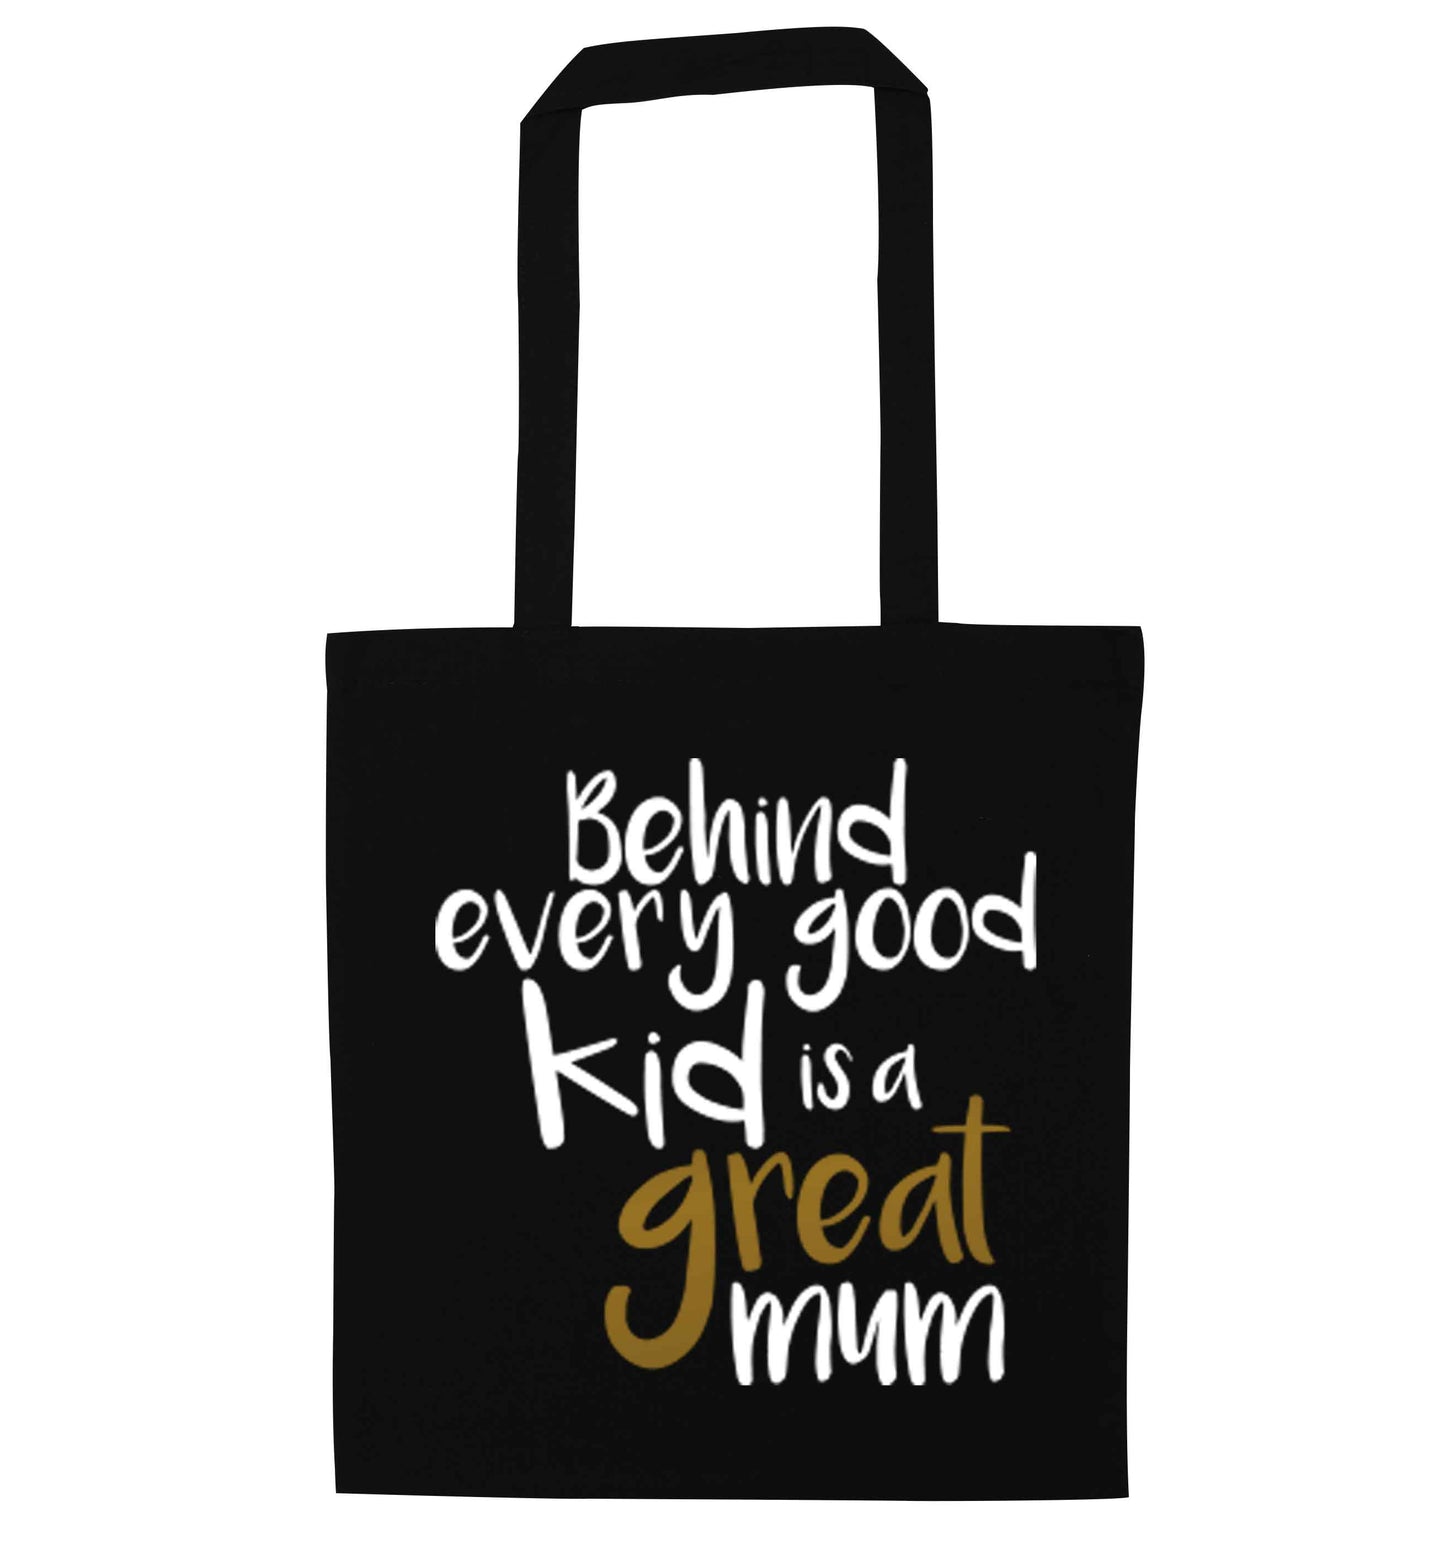 Behind every good kid is a great mum black tote bag